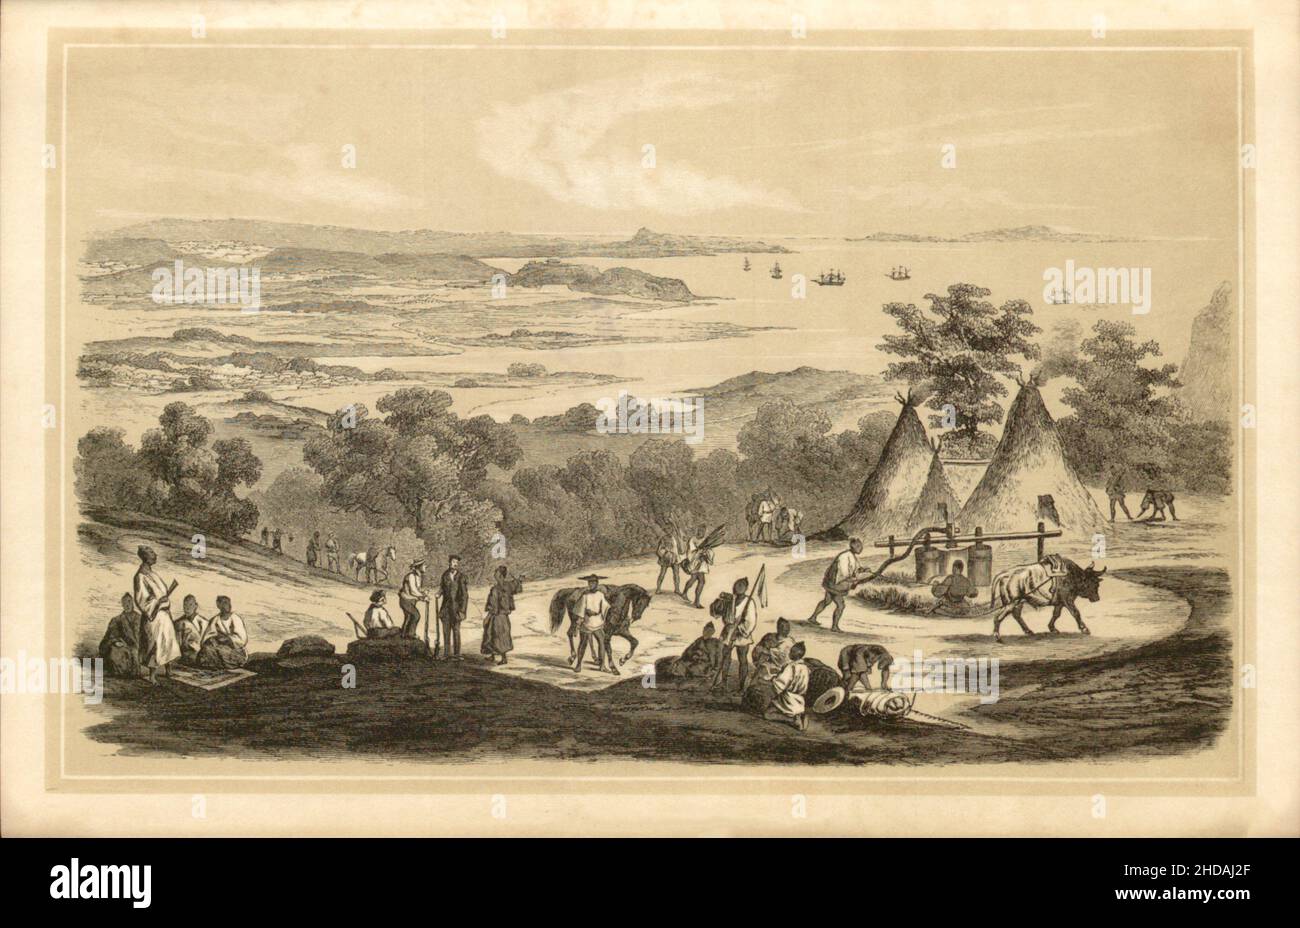 Antica litografia del Giappone del 19th secolo: Vista da Napa alle isole Ryukyu. 1856 spedizione di Commodore Perry Foto Stock